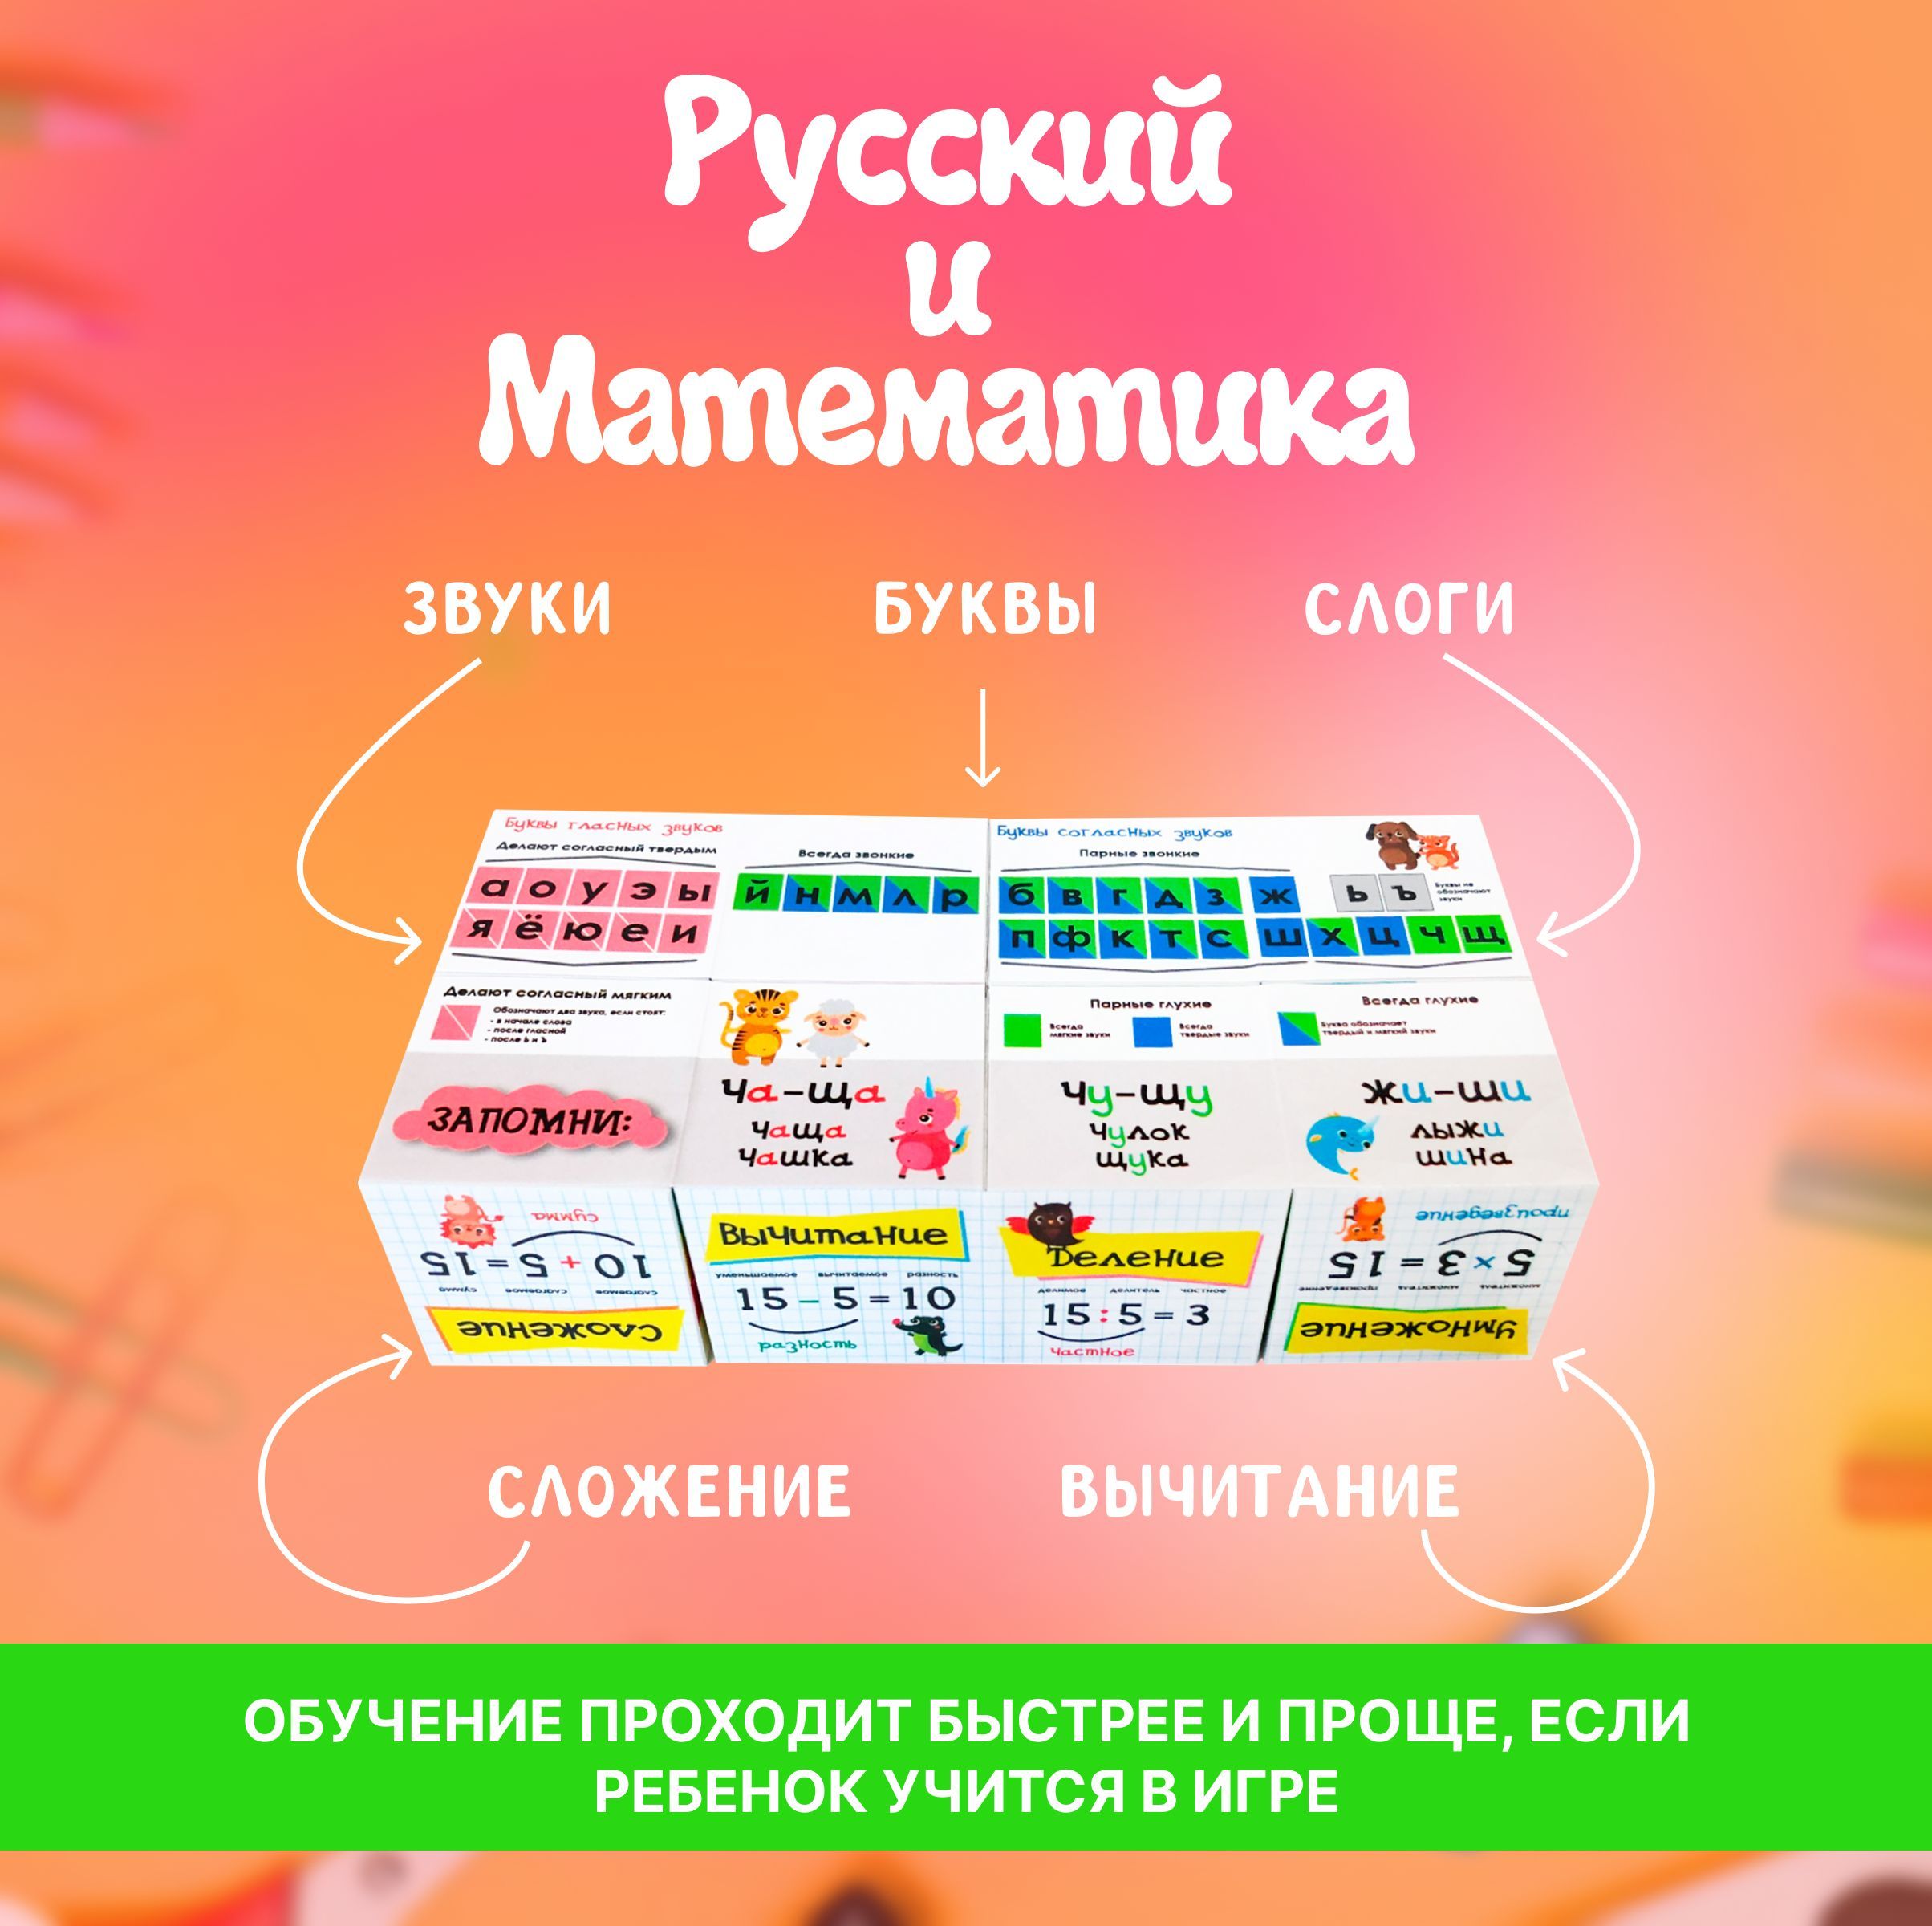 Кубик транформер MAGTRADE WOW пособие по русскому языку и математике для начальных классов - фото 3